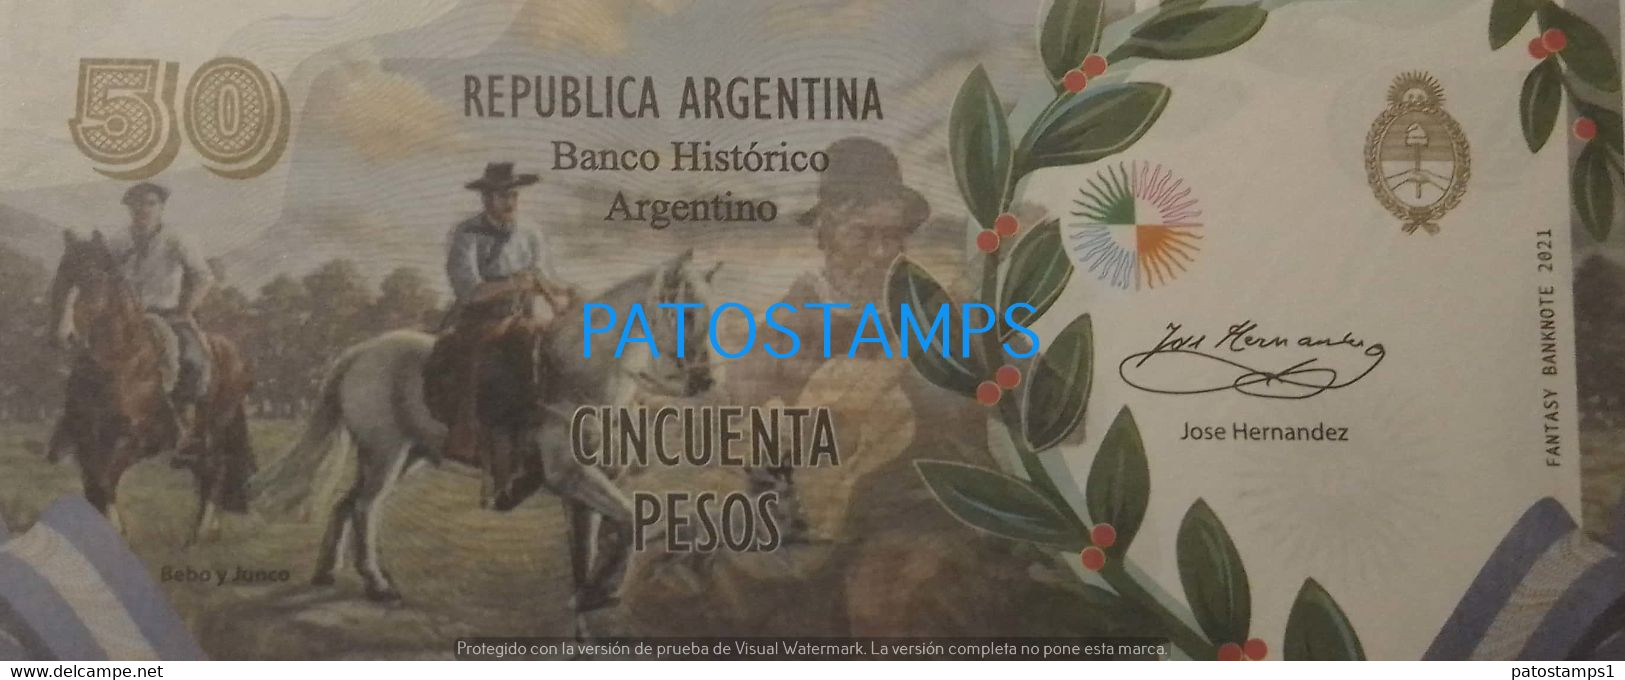 192529 BILLETE FANTASY TICKET 50 BANK ARGENTINA PROCER JOSE HERNANDEZ TIERRA GAUCHA NO POSTCARD - Alla Rinfusa - Banconote